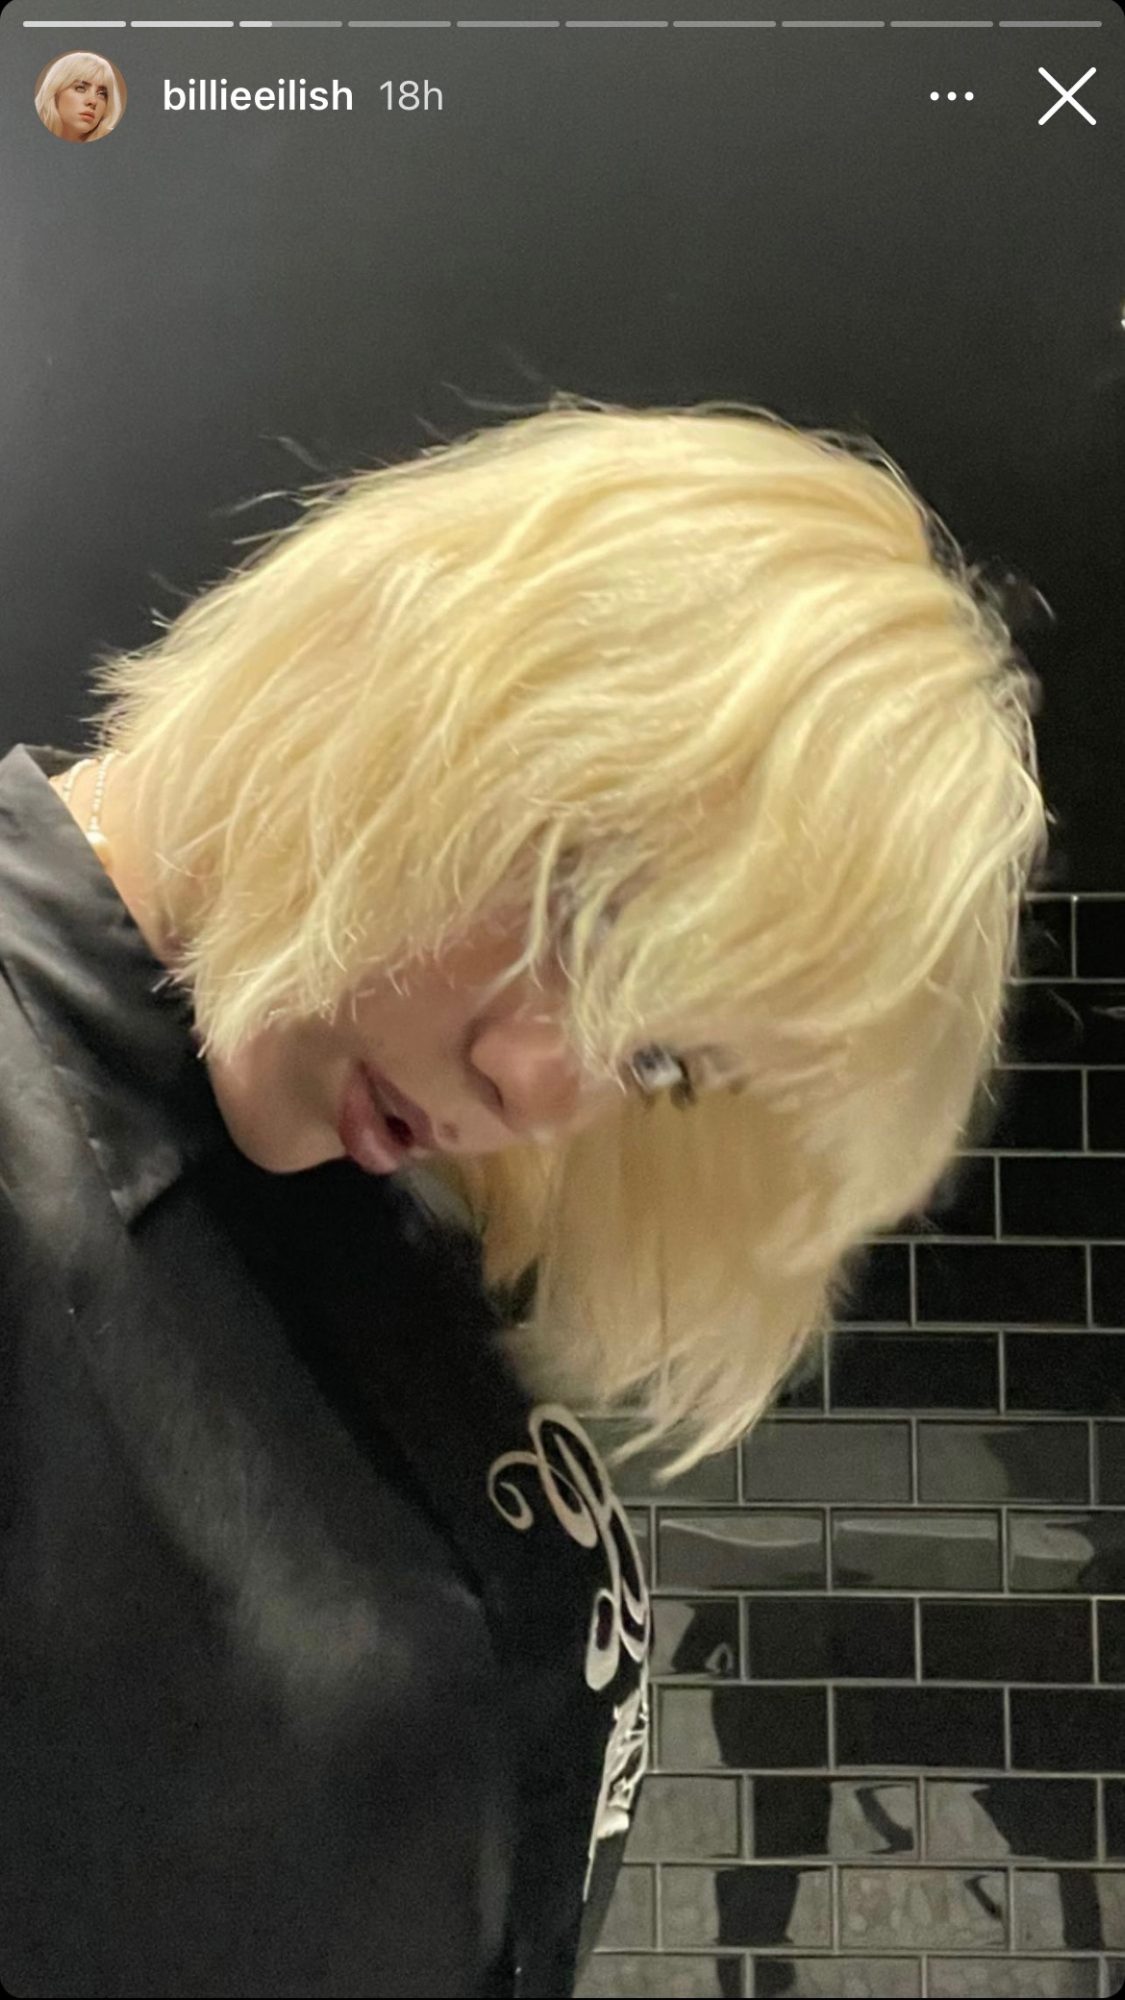 Billie Eilish with short blonde hair